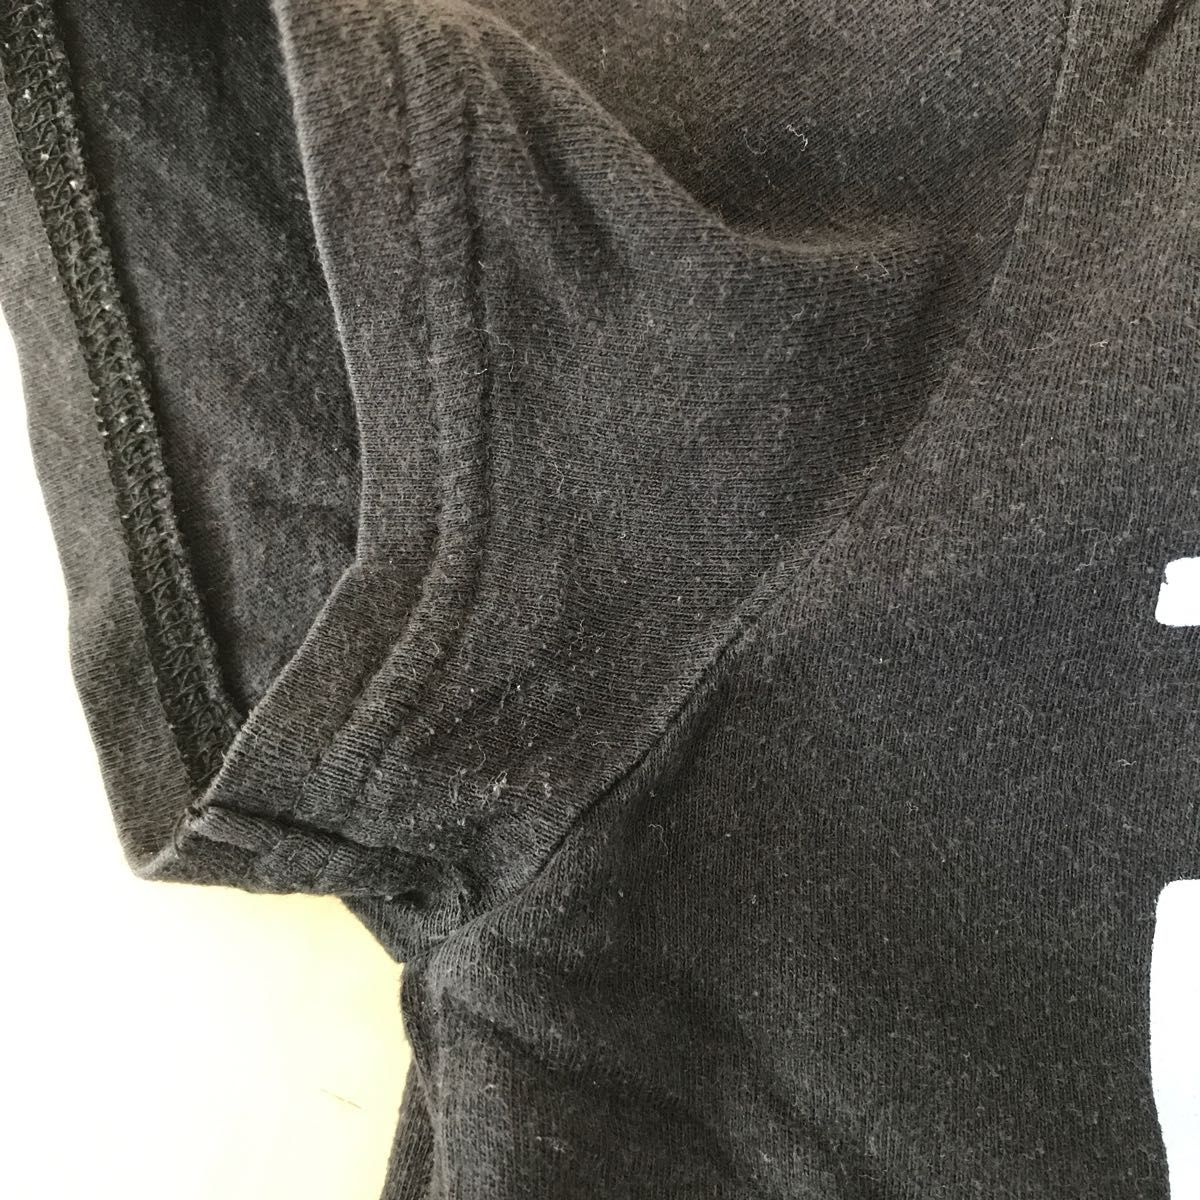 KP/ニットプランナー 半袖カットソー サイズ150 黒 ミミちゃん 半袖Tシャツ